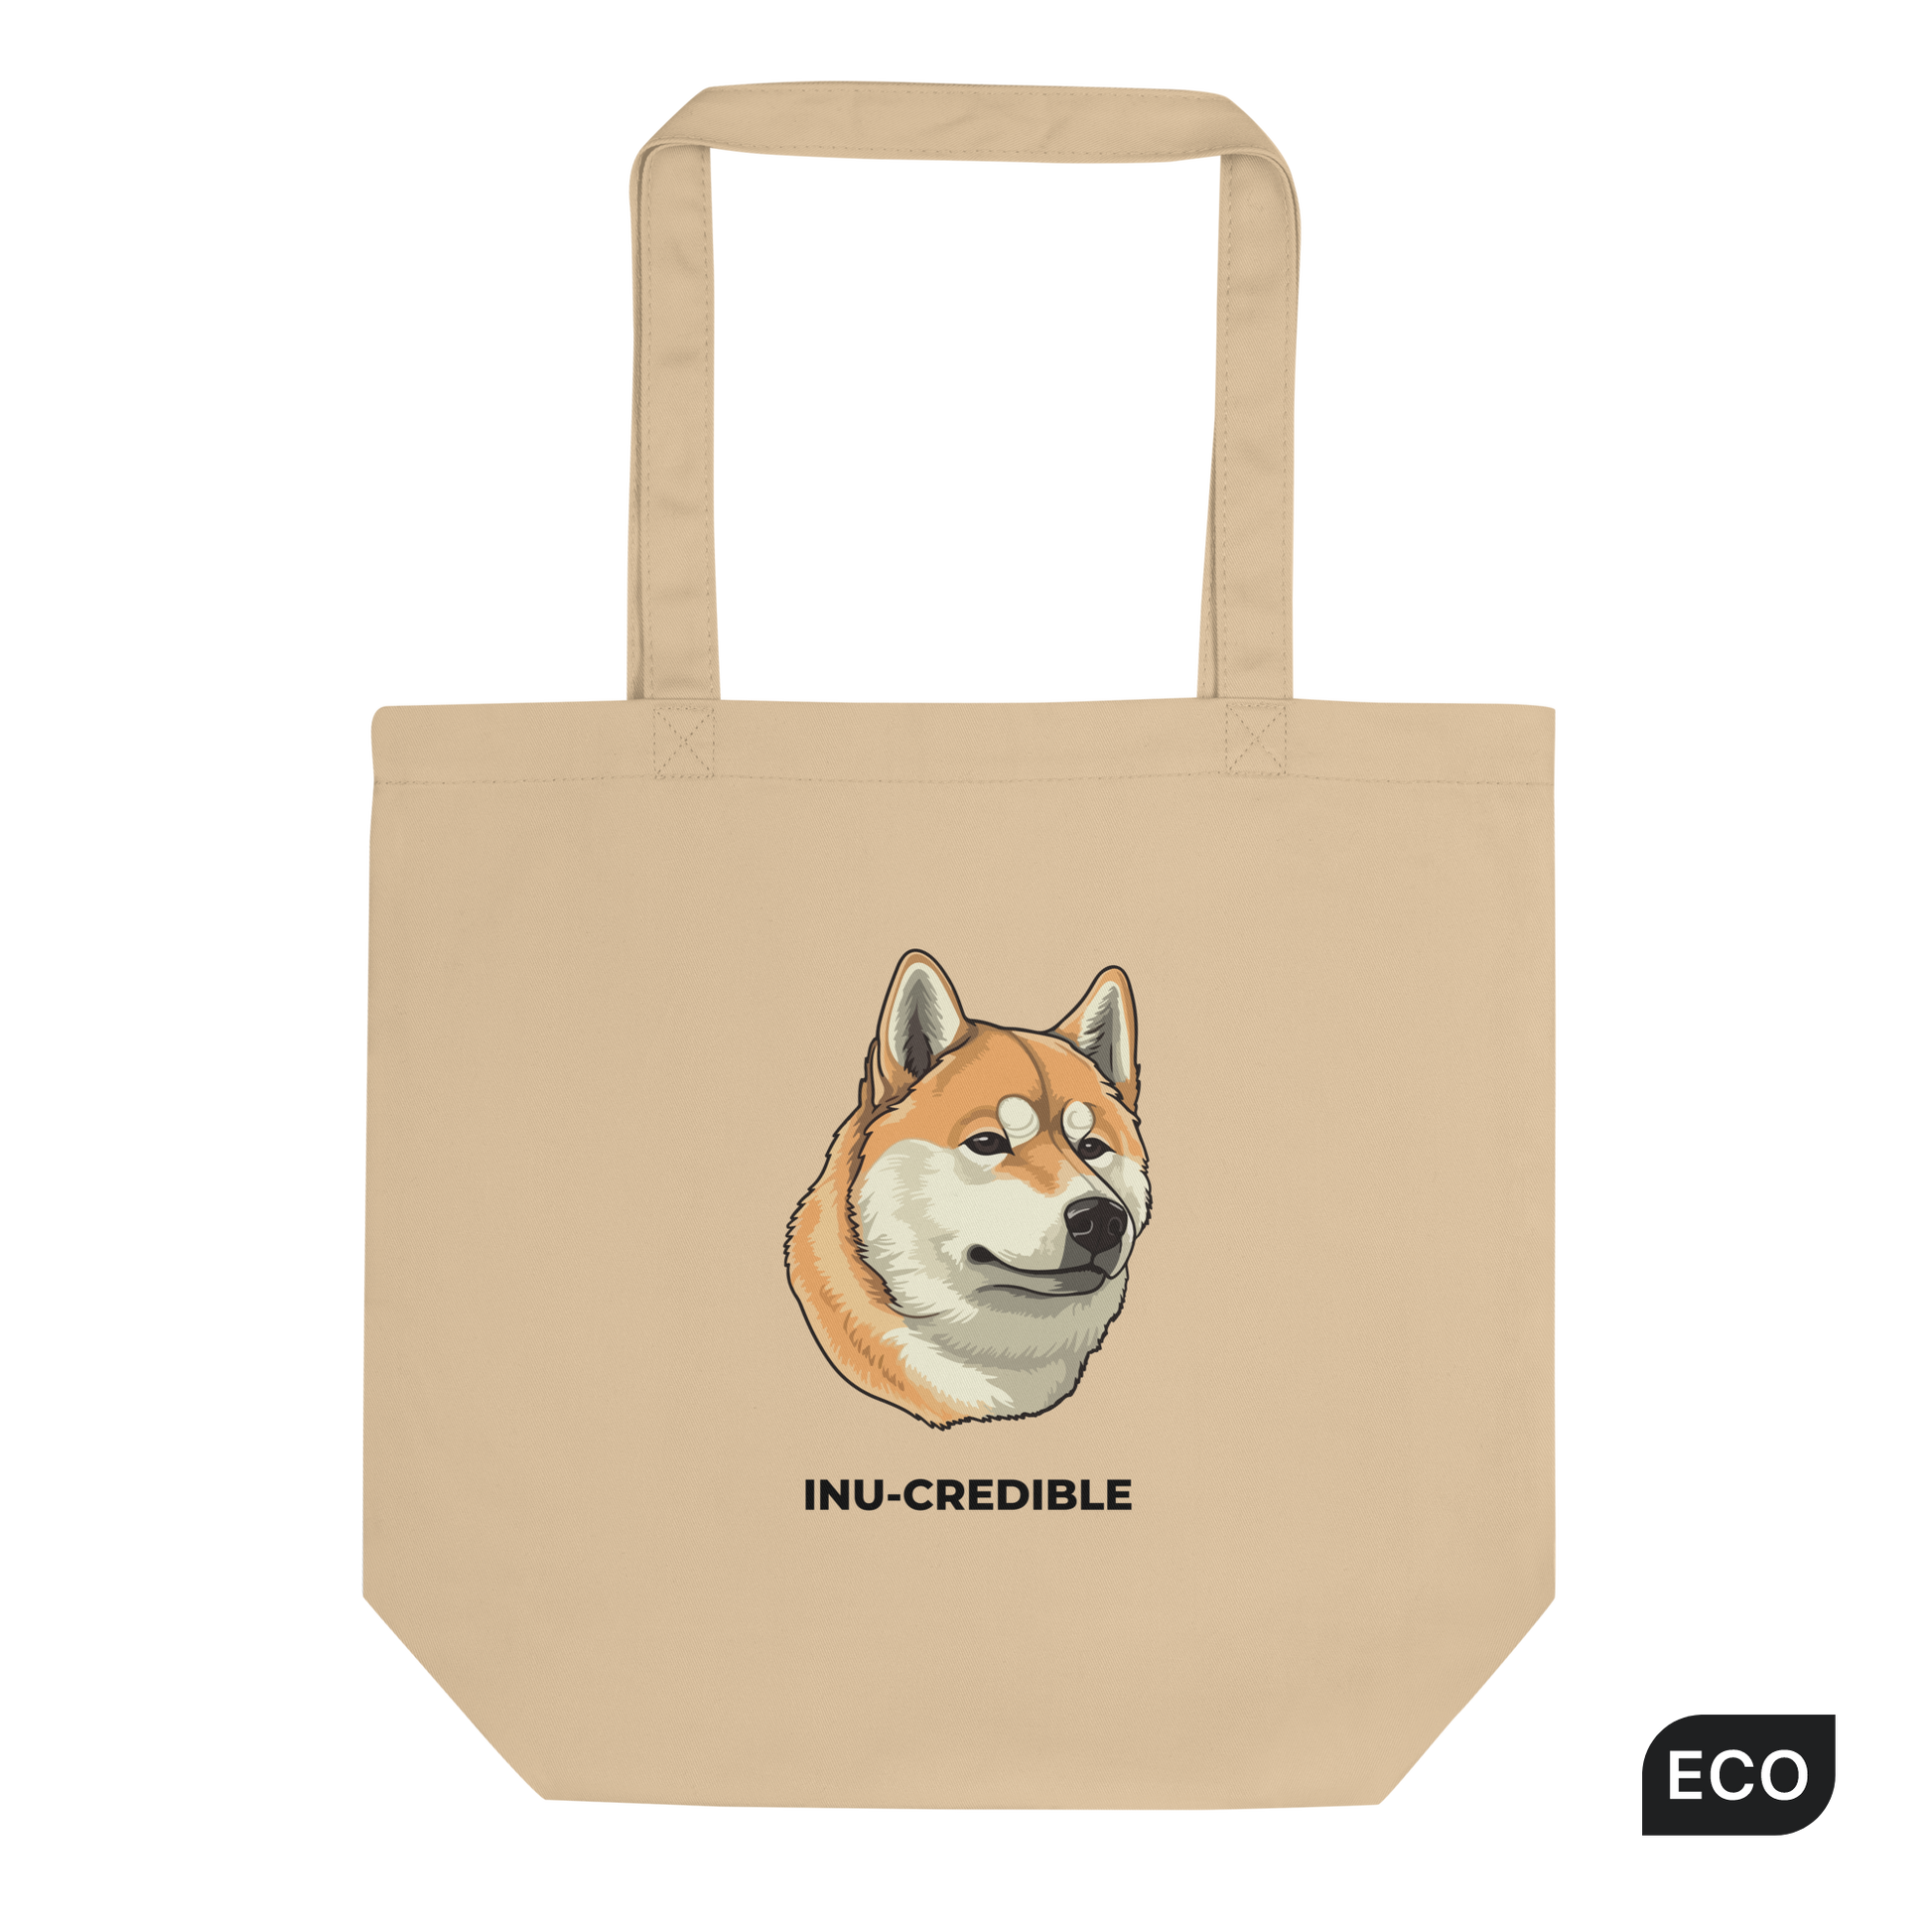 Shop Bucket Bags Online